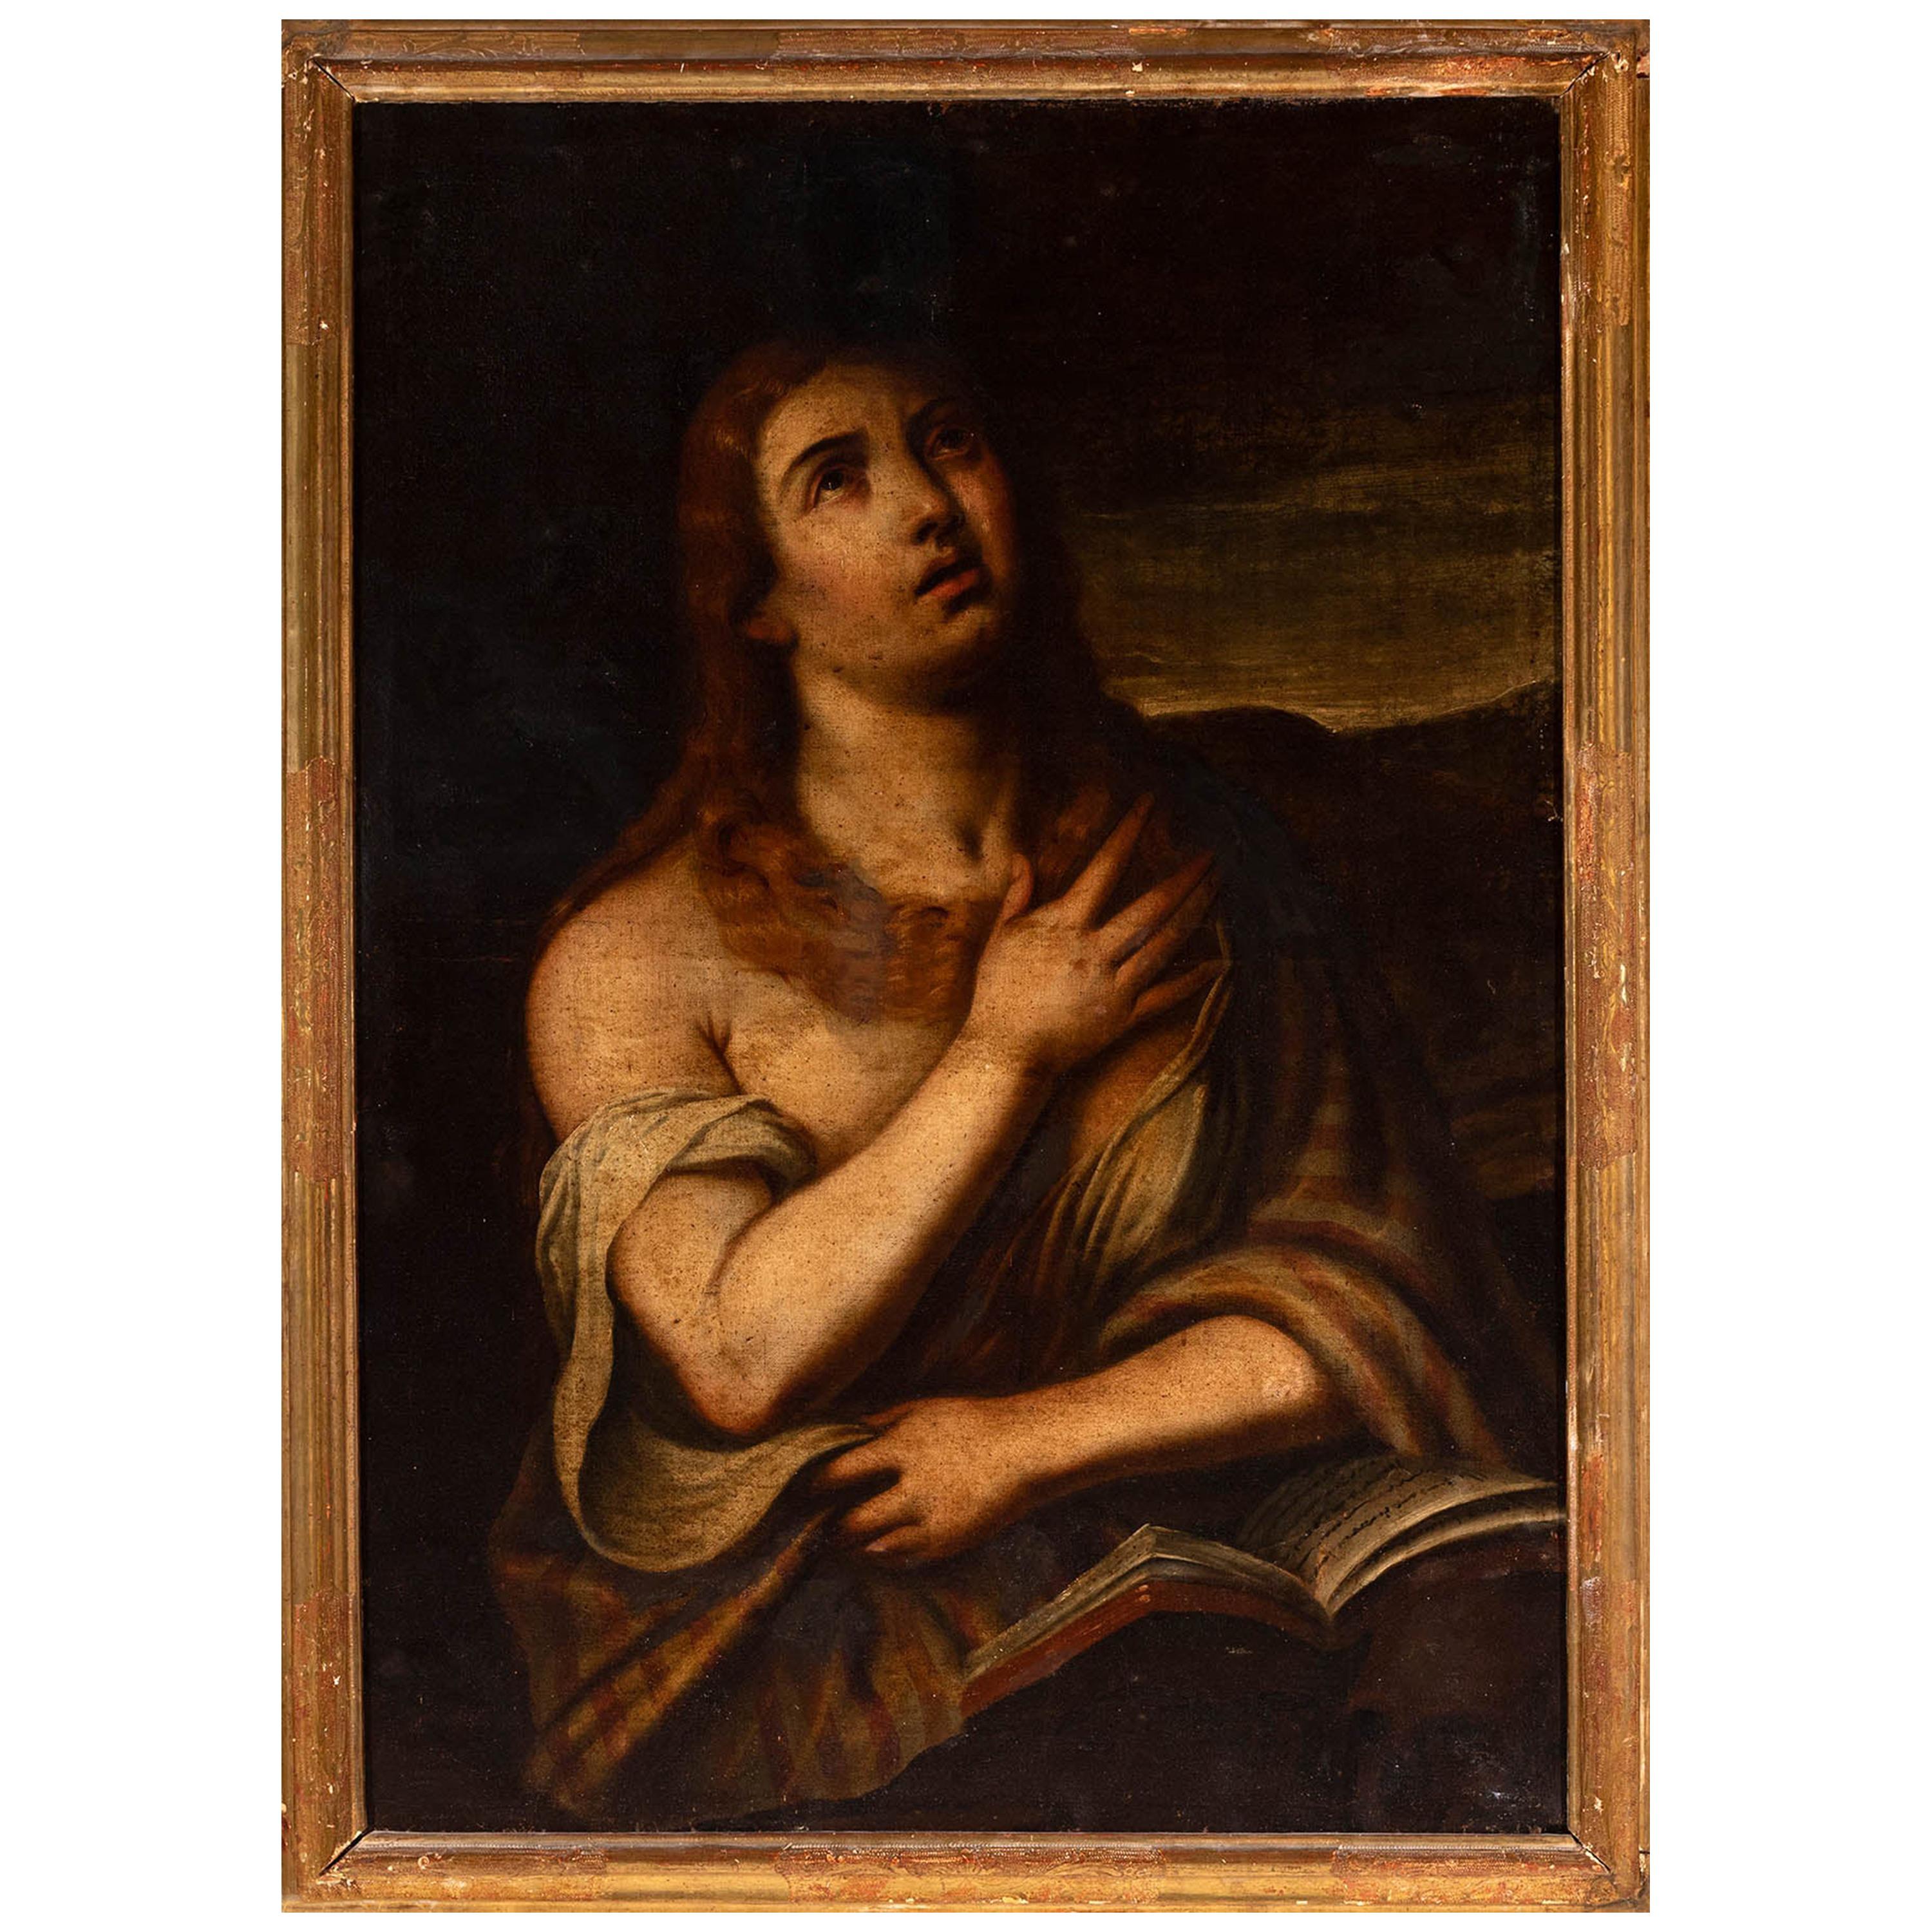 Spanisches „Penitent Magdalene“ aus dem 18. Jahrhundert, Öl auf Leinwand, nach Tiziano